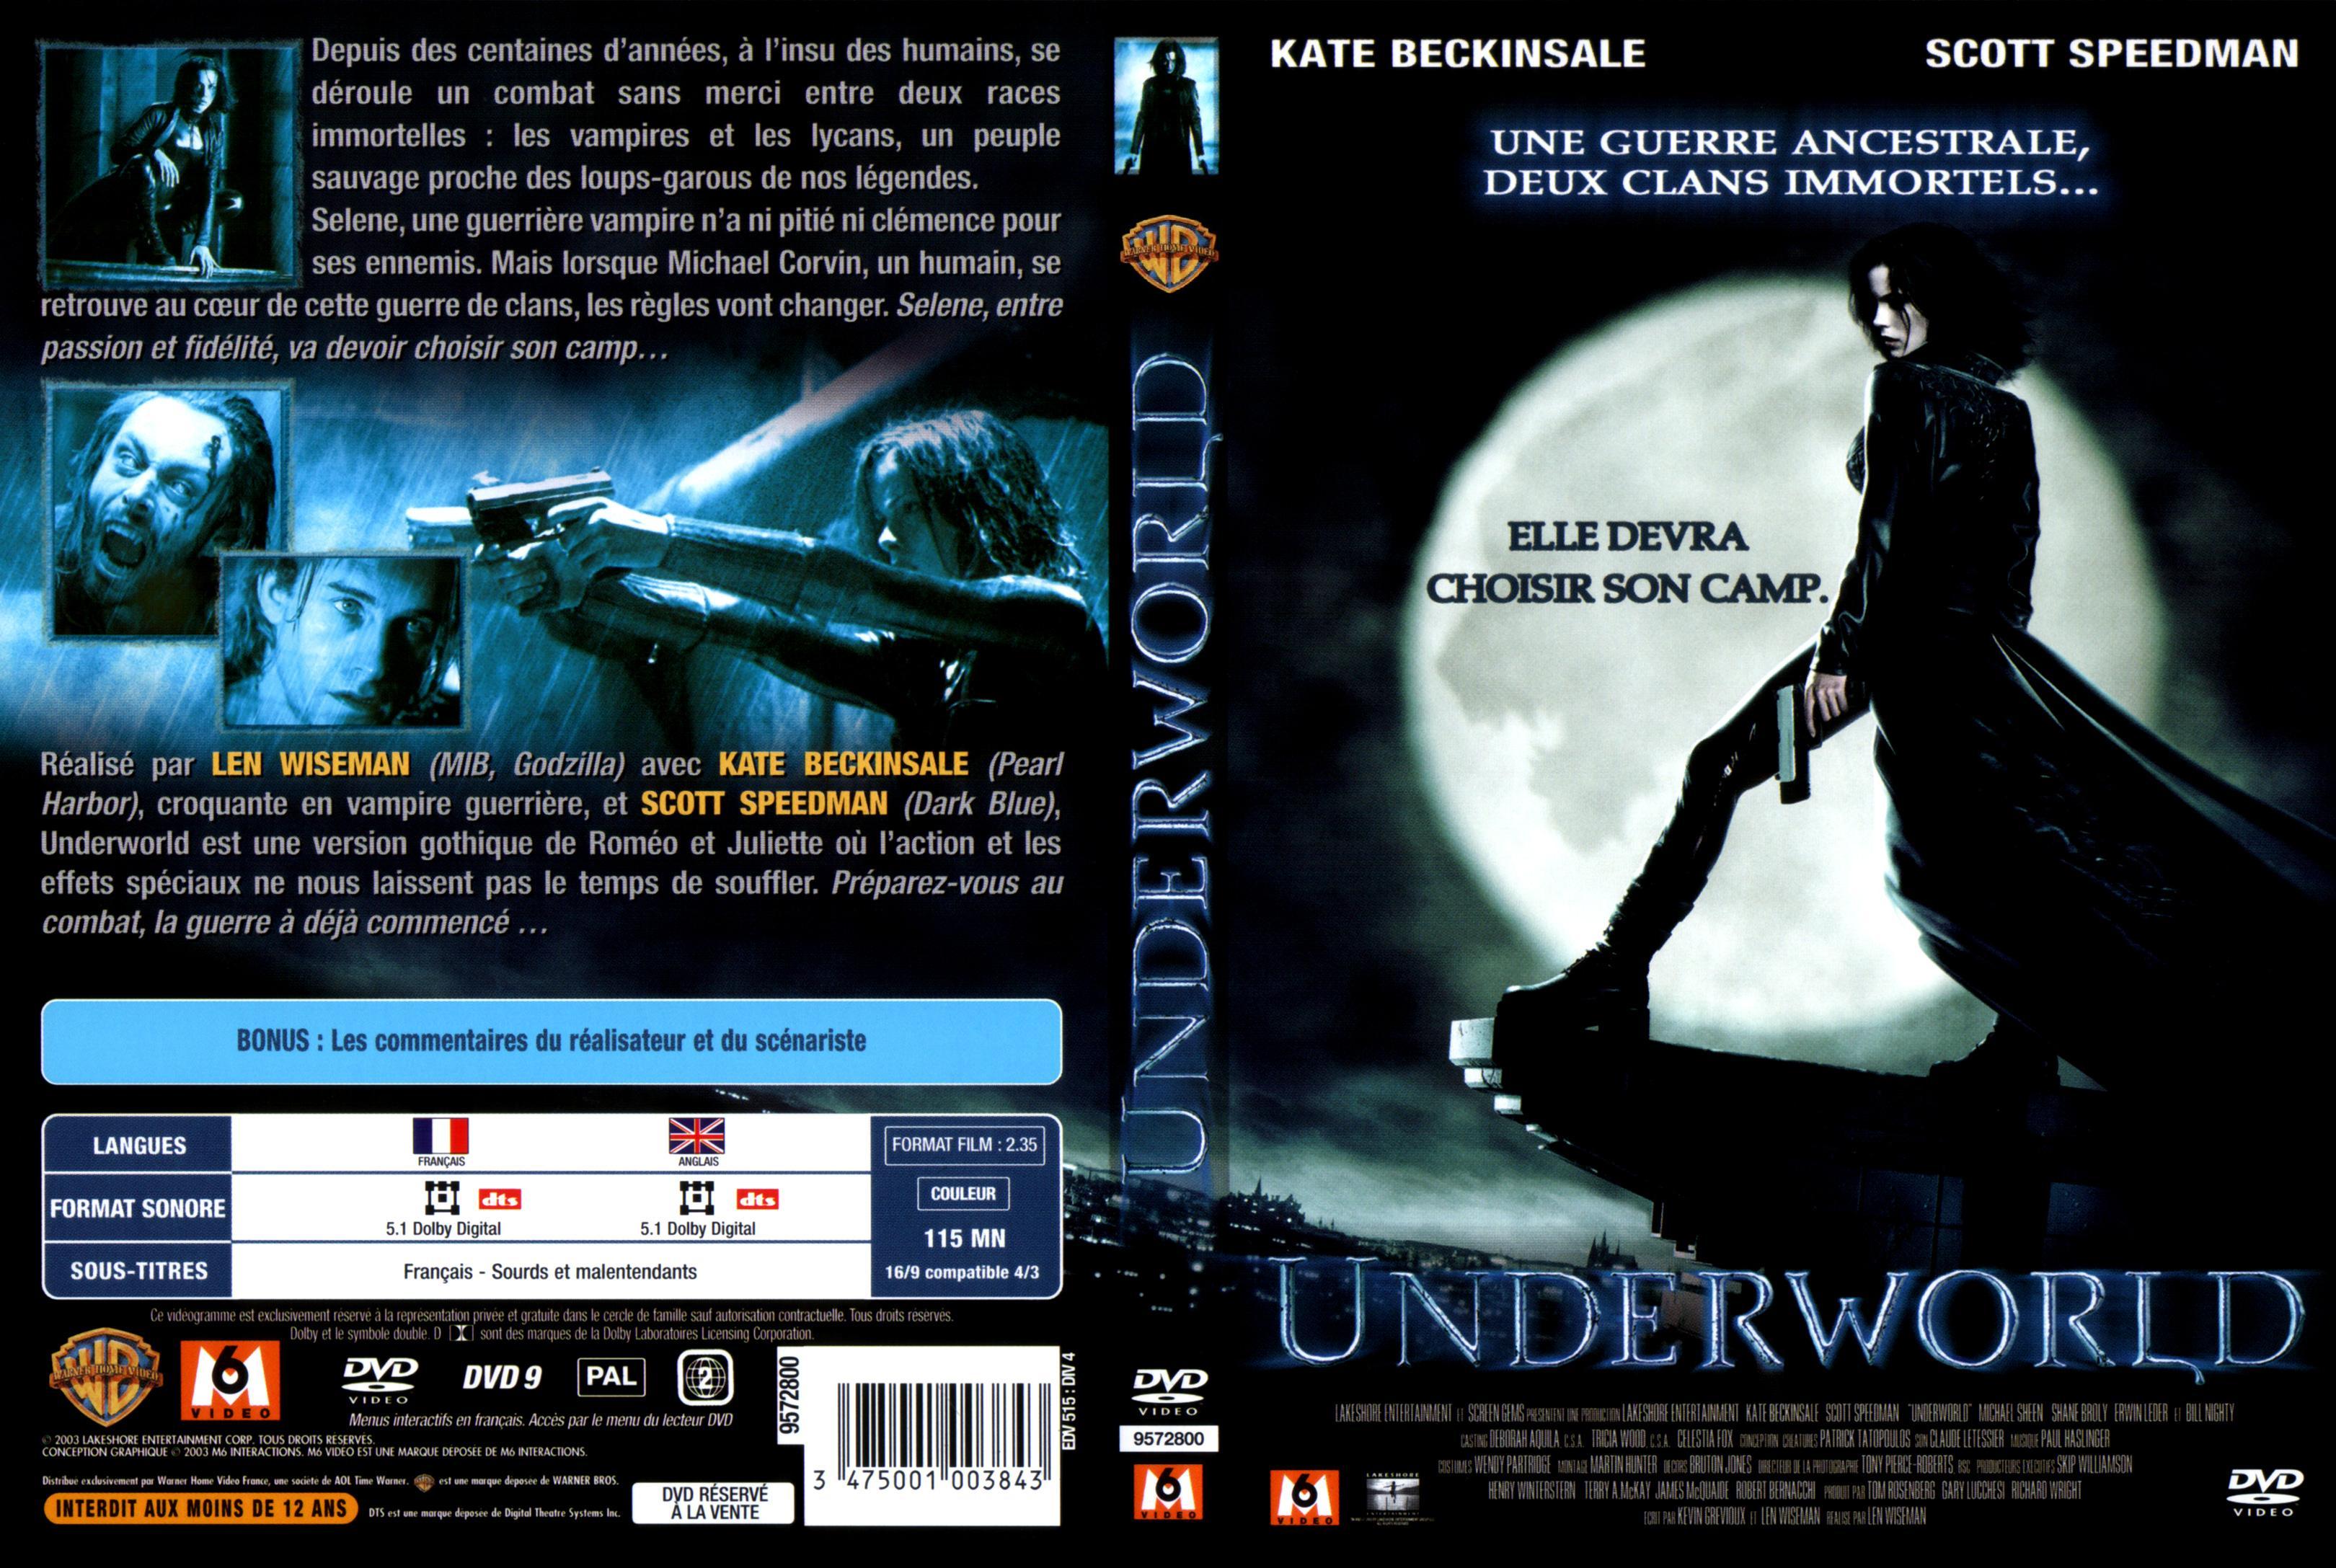 Jaquette DVD Underworld